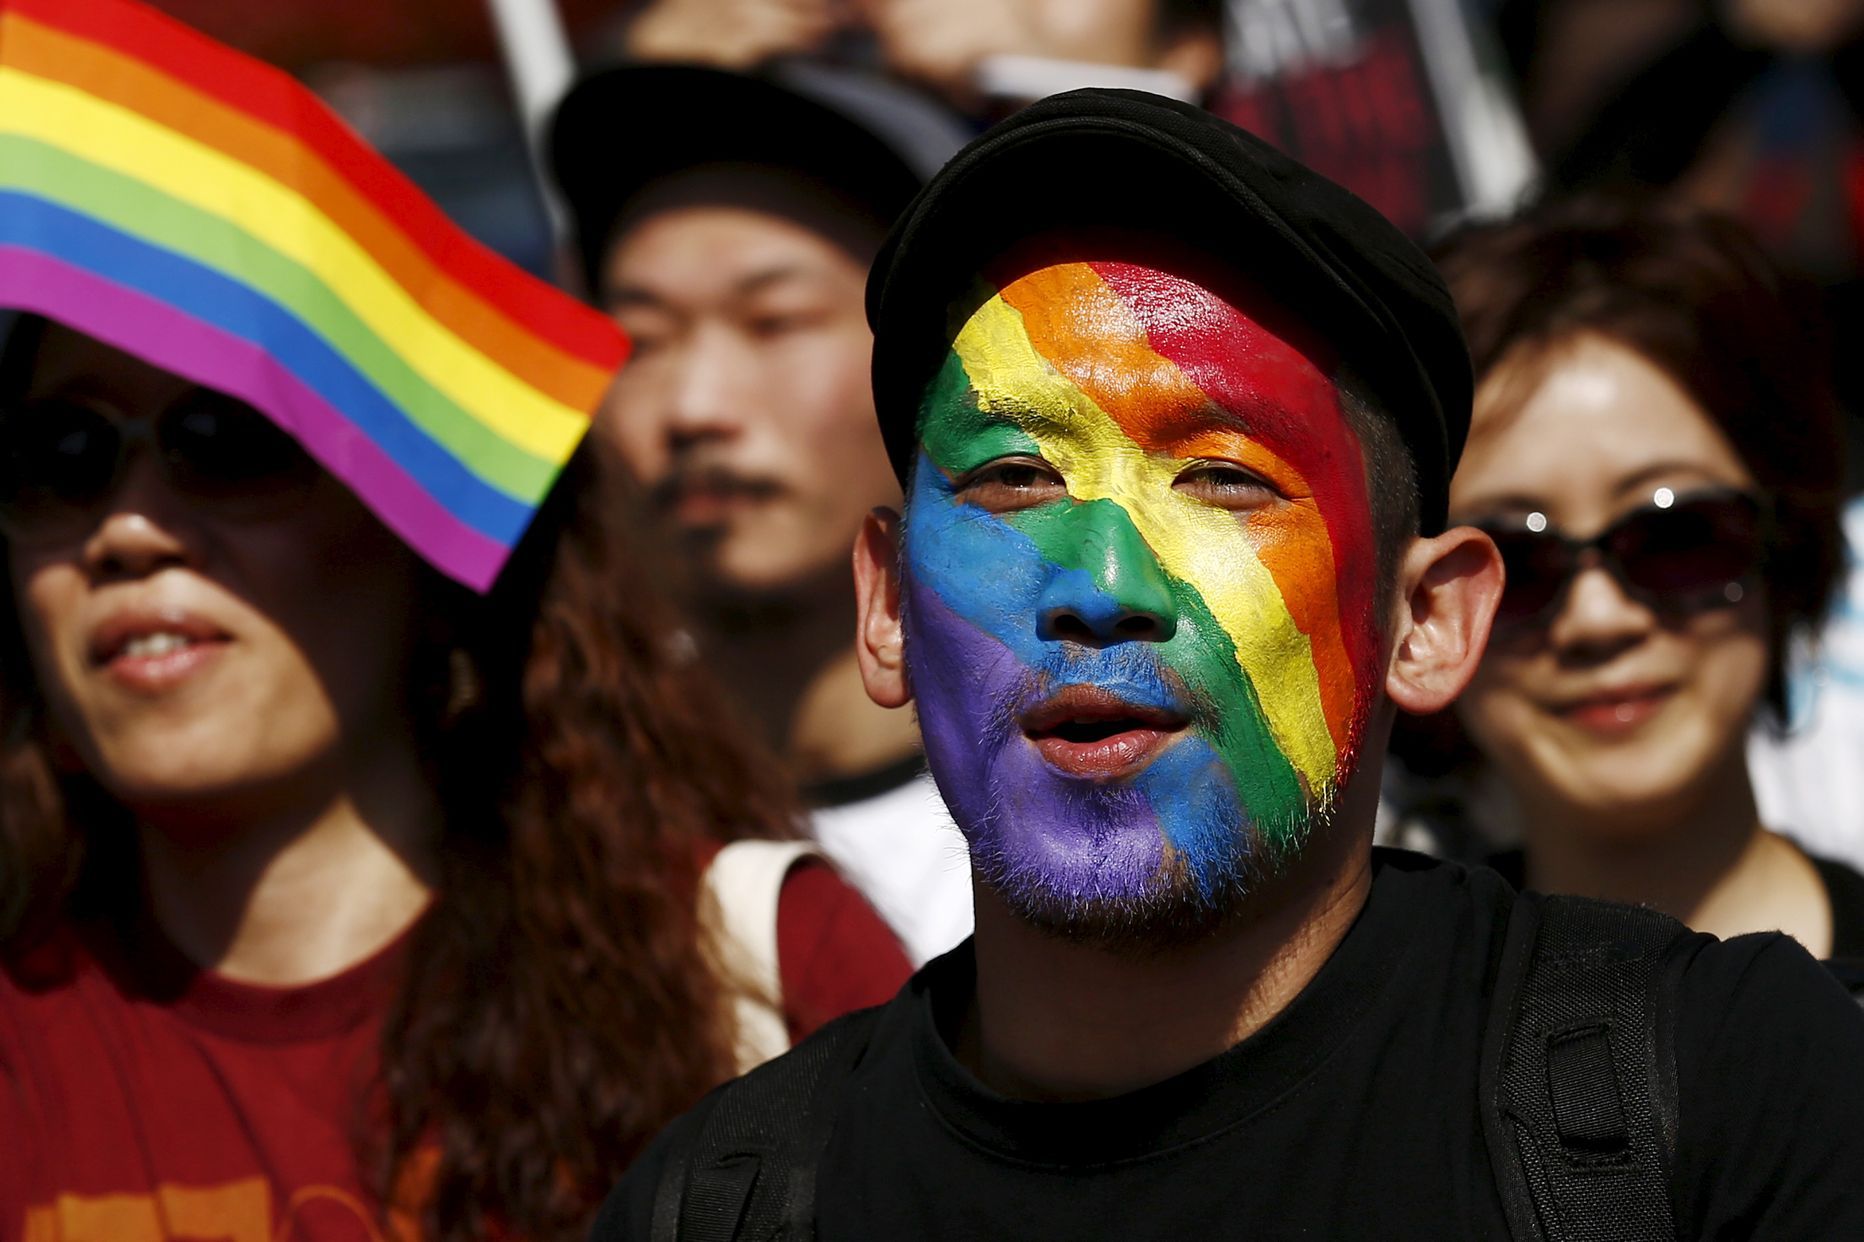 Мужчина, чье лицо раскрашено в цвета радуги, принимает участие в параде Tokyo Rainbow Pride в Токио. Фото: Thomas Peter